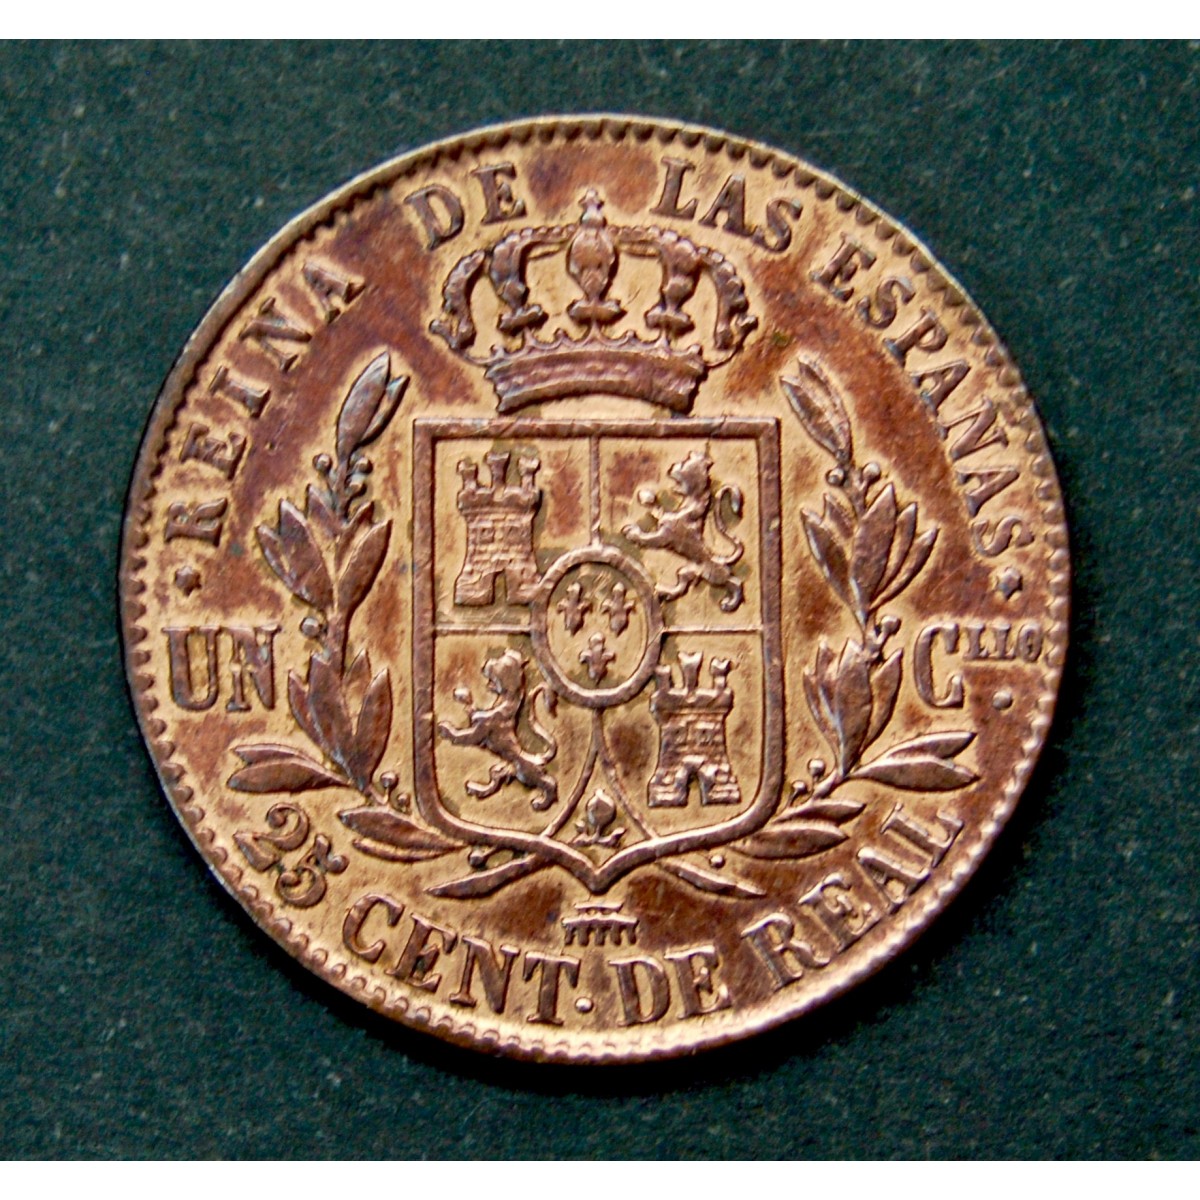 Moneda Isabelina de 25 céntimos, 1863, ceca de Segovia.